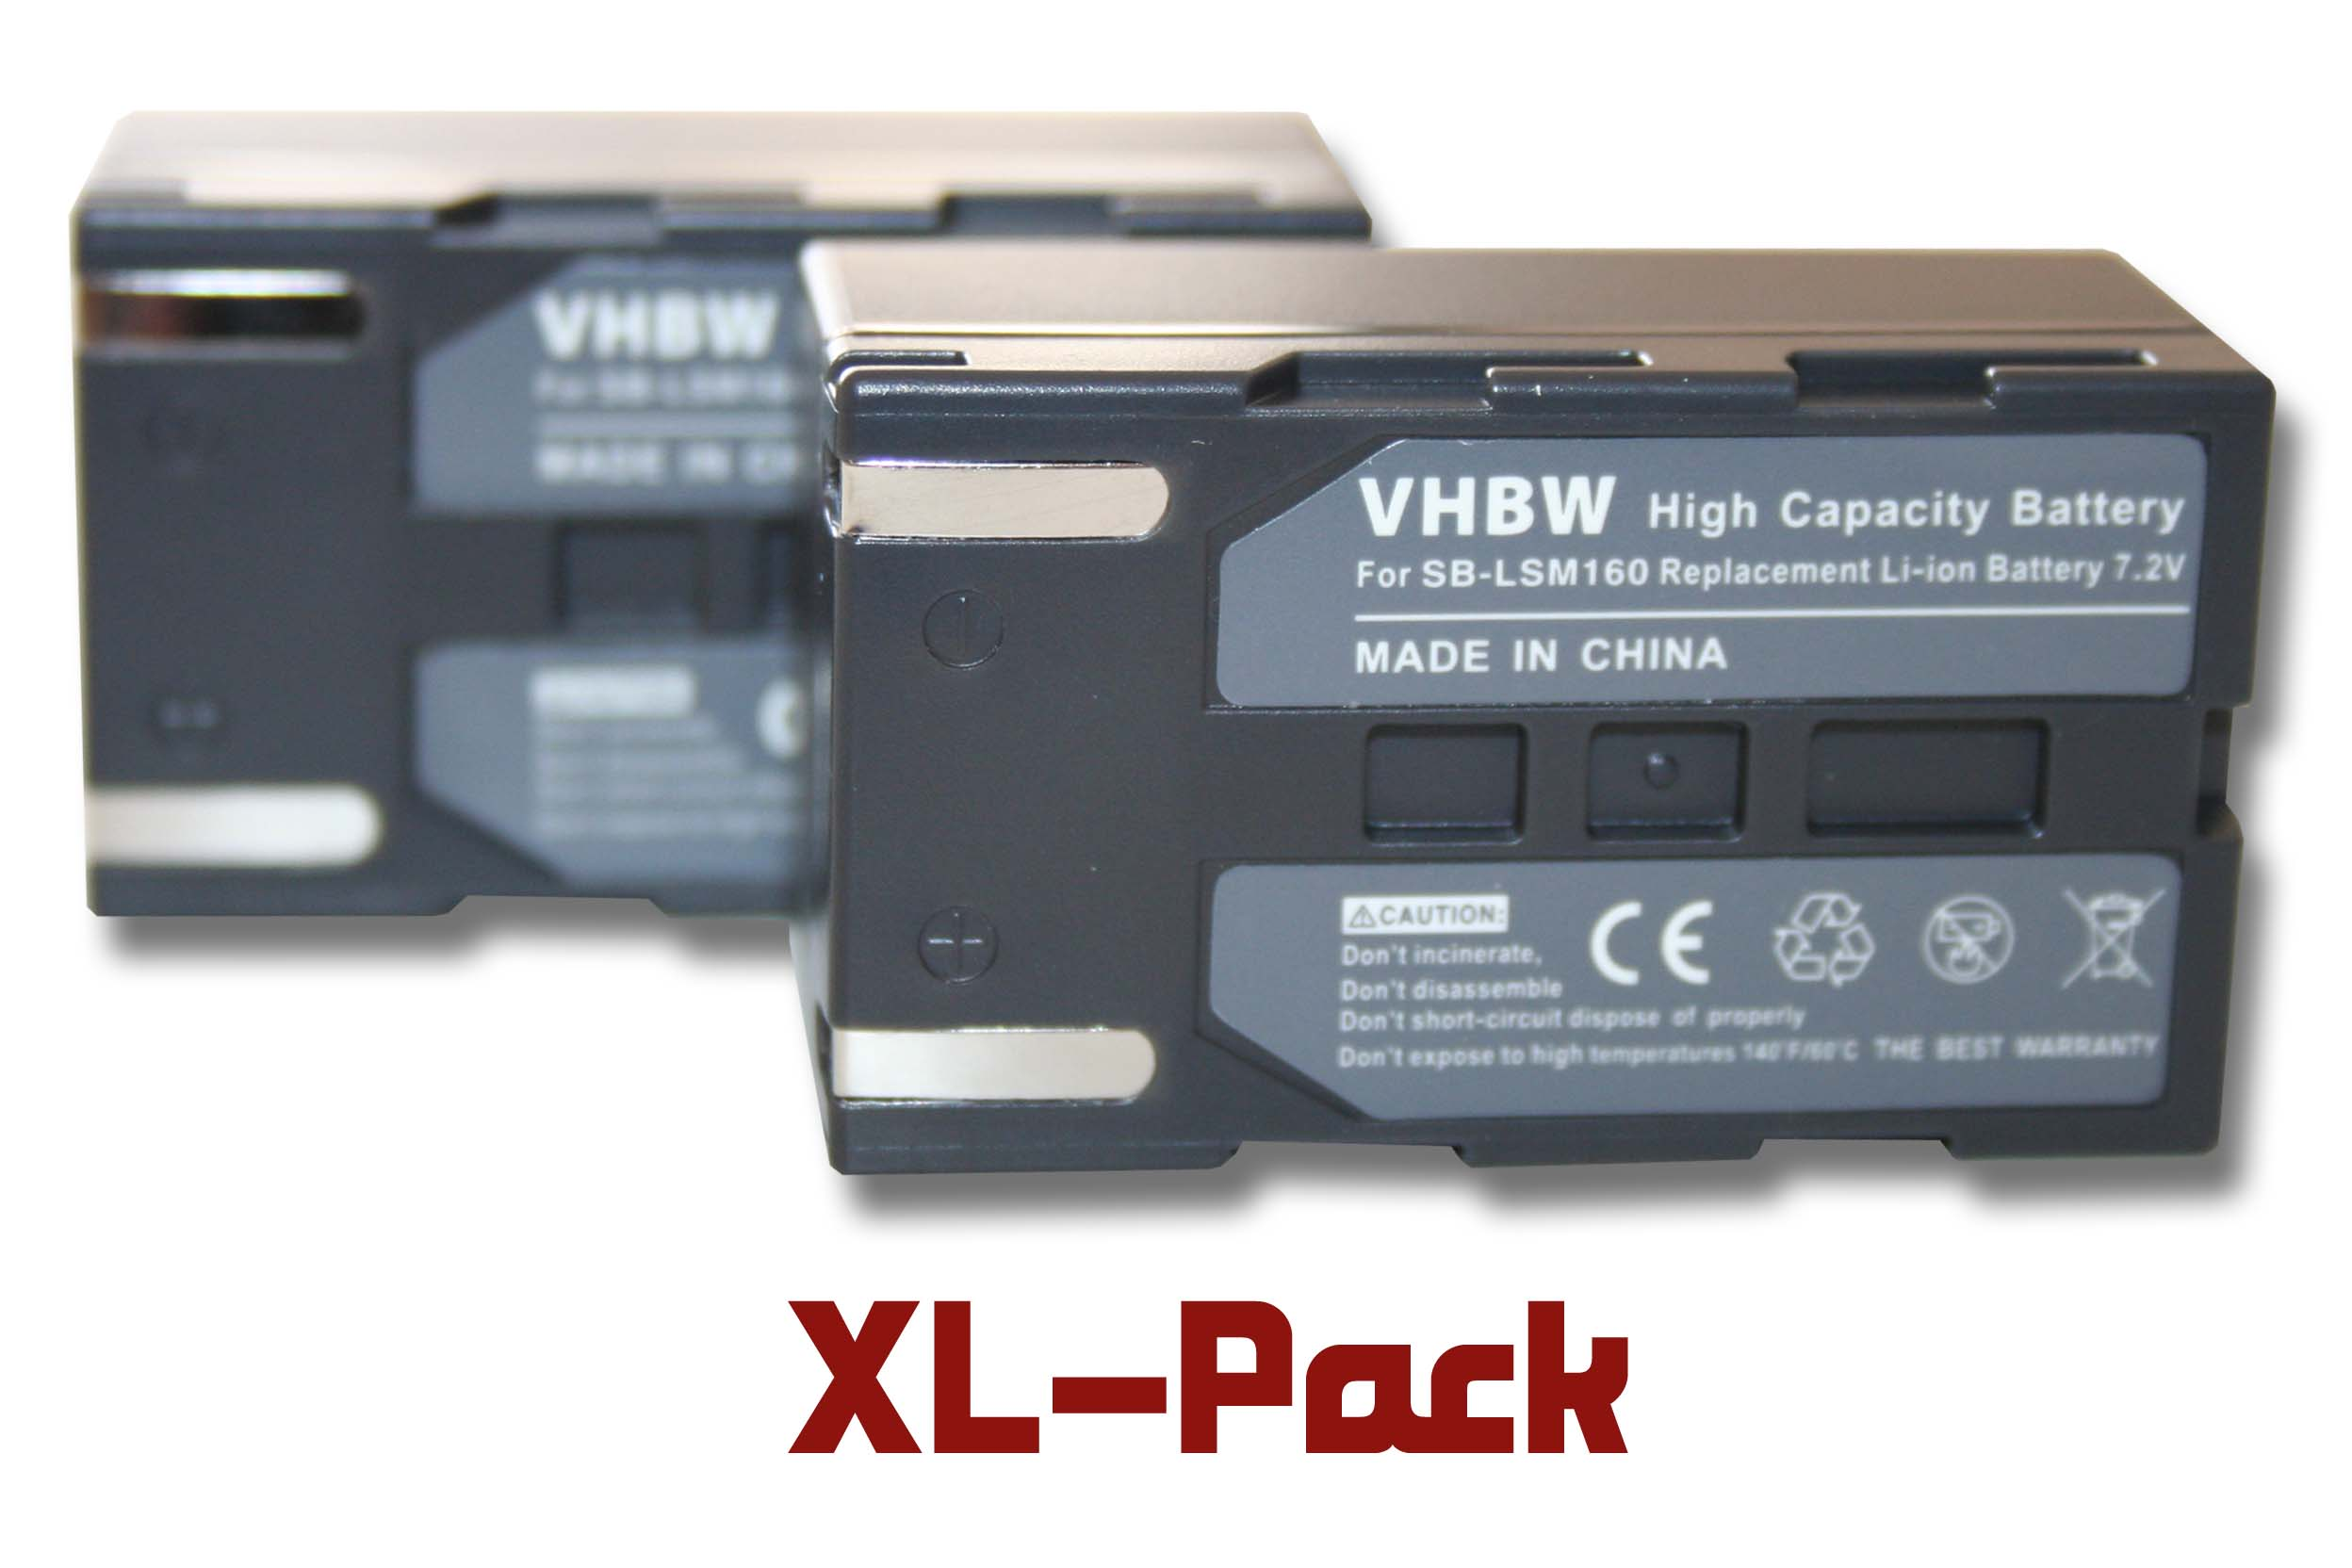 VHBW kompatibel mit Akku VP-D364W, VP-D453, Samsung VP-D362, VP-D371, VP-D451, VP-D371W - Volt, Videokamera, 1200 VP-D453i, Li-Ion 7.2